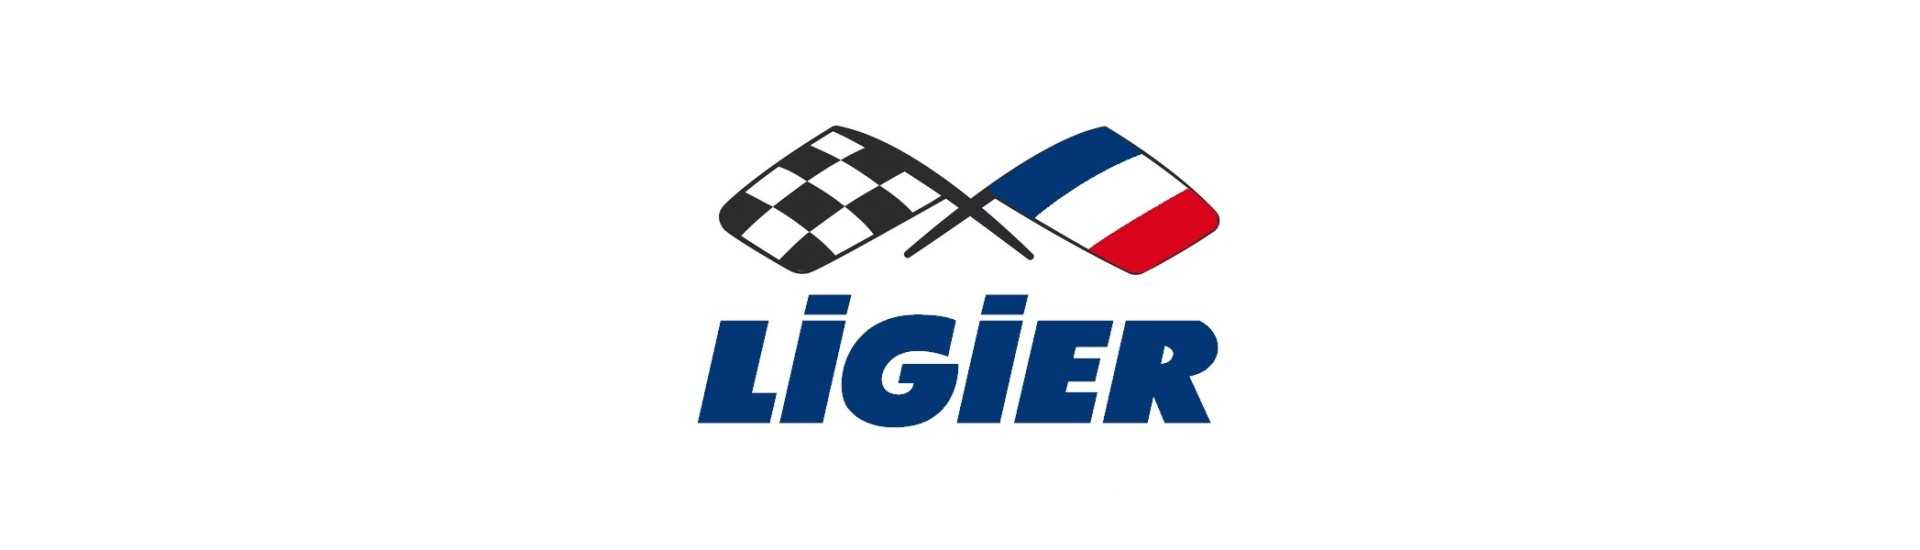 Autofahrer mit dem besten Preis ohne Lizenz Ligier